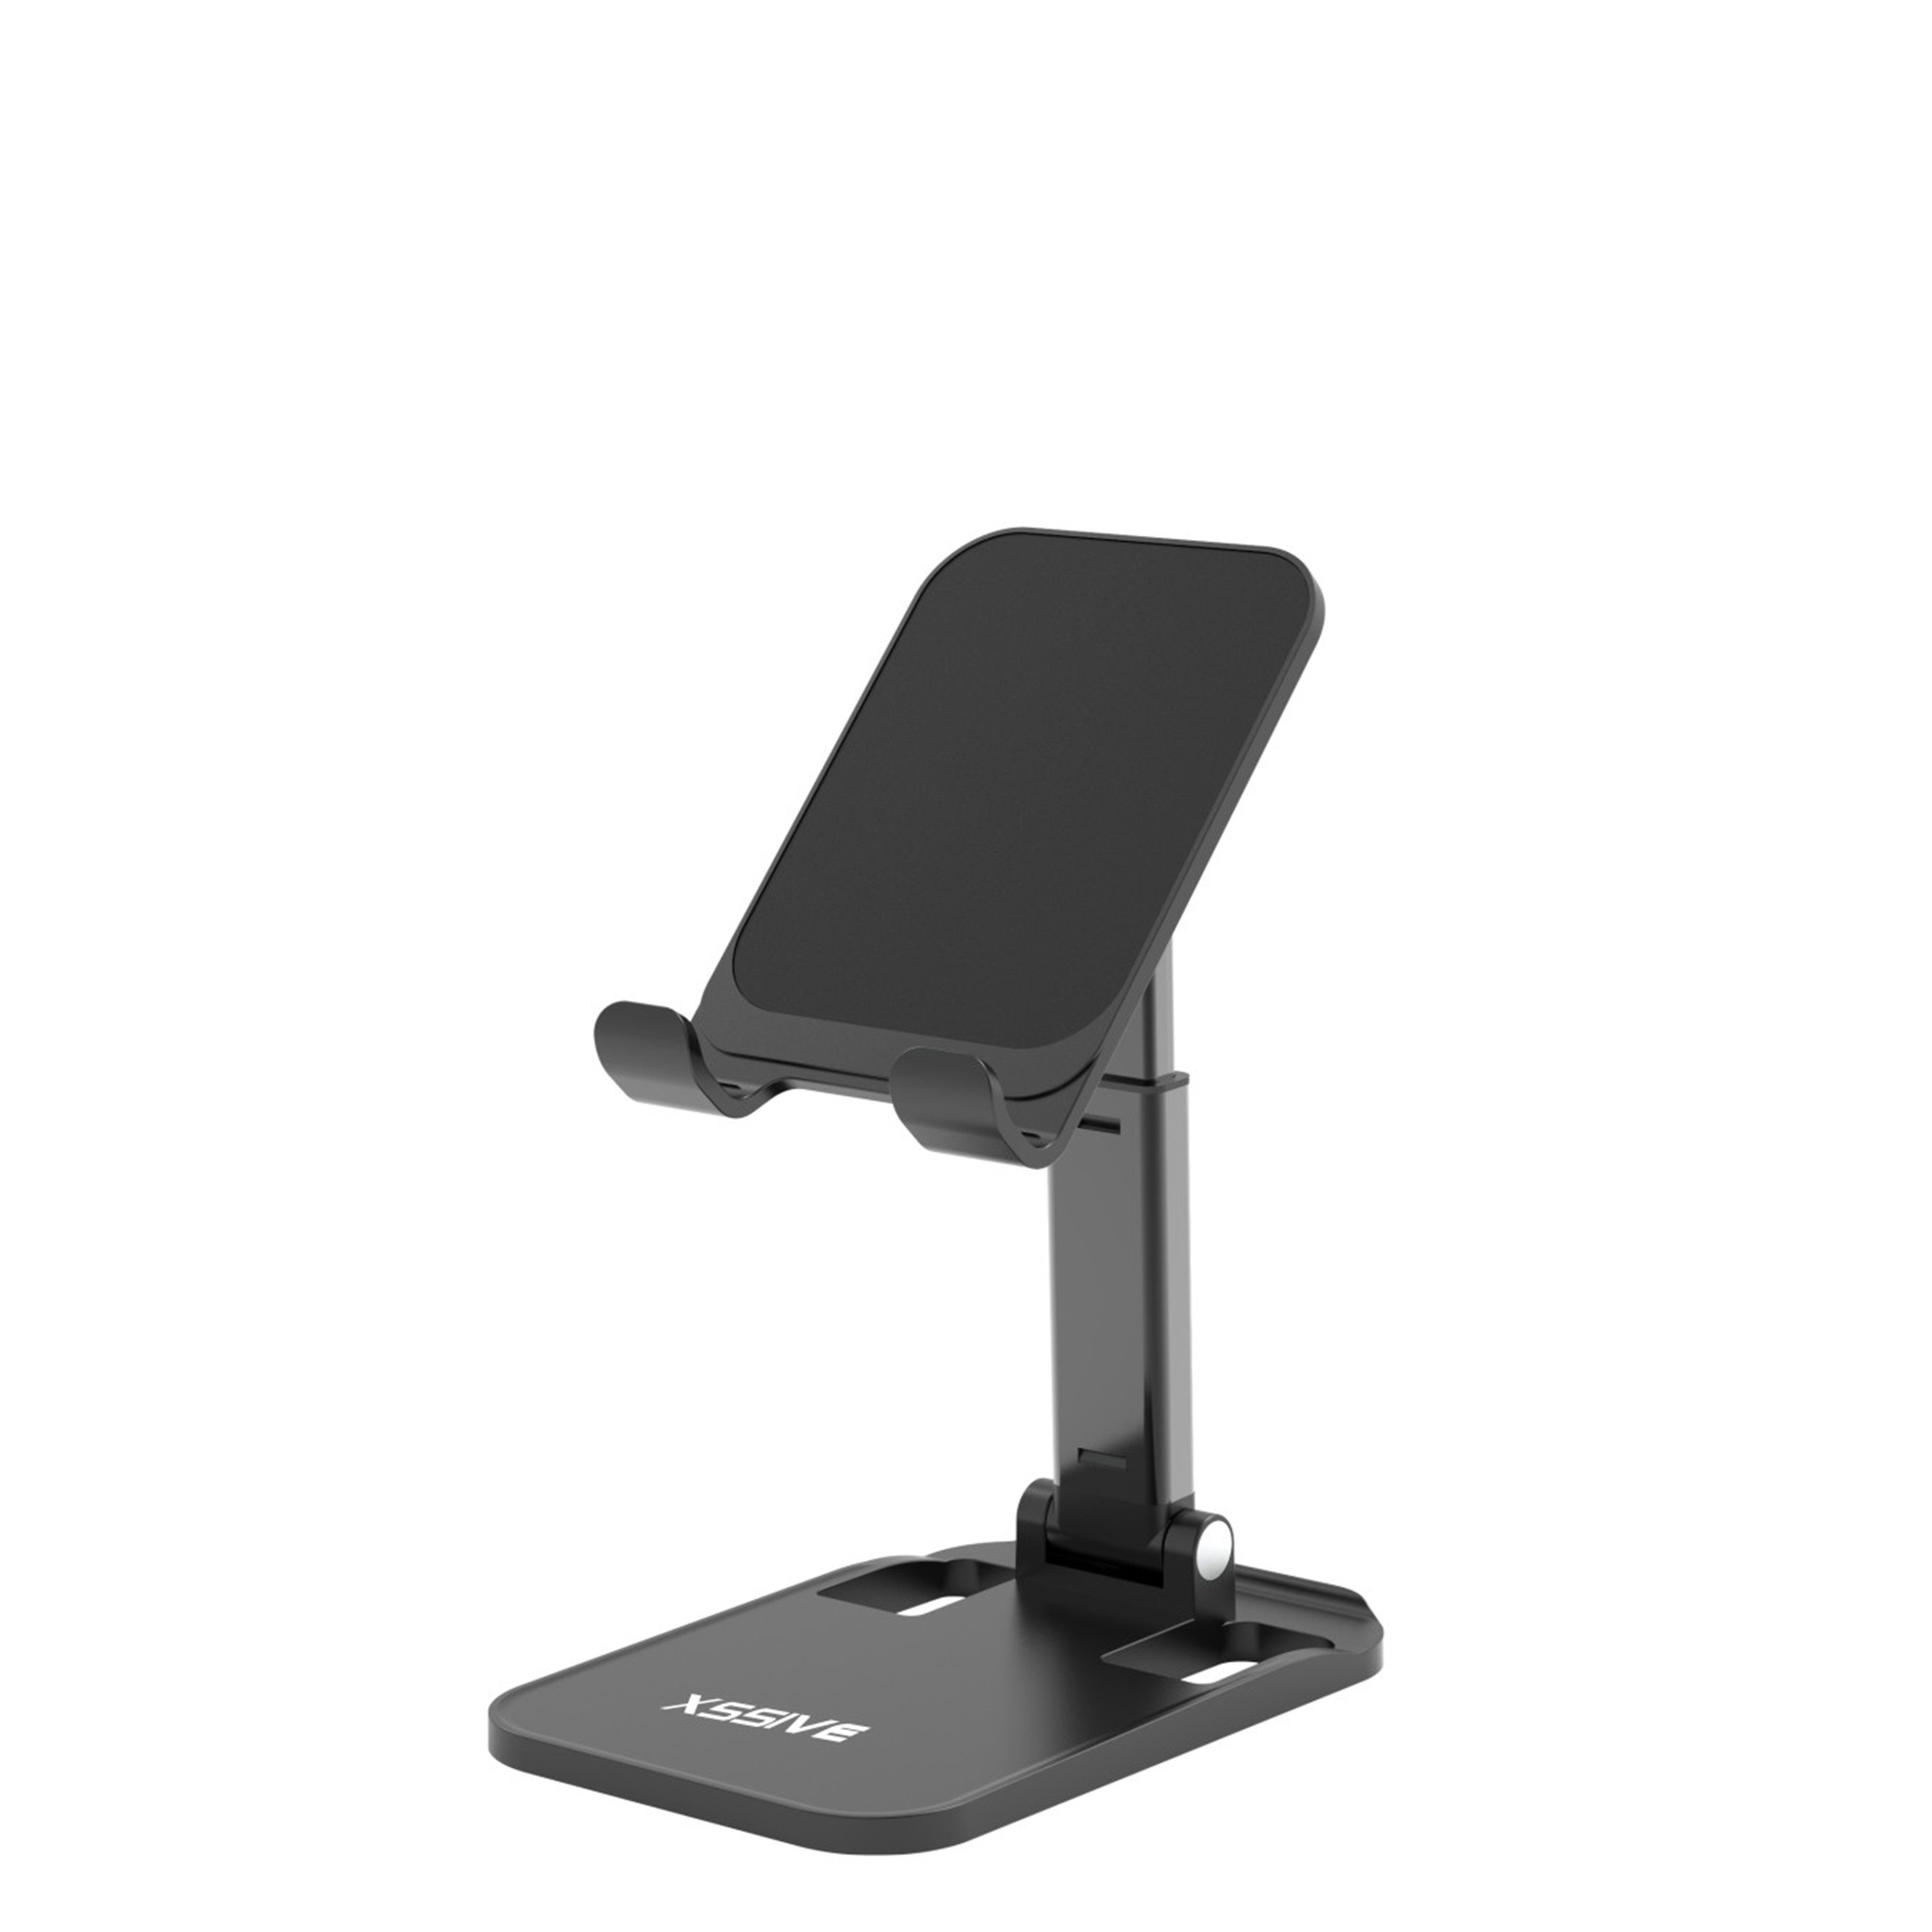 Xssive Tischhalterung ausfahrbar Universal Ständer Tablet Halter Schwarz Smartphone-Halterung